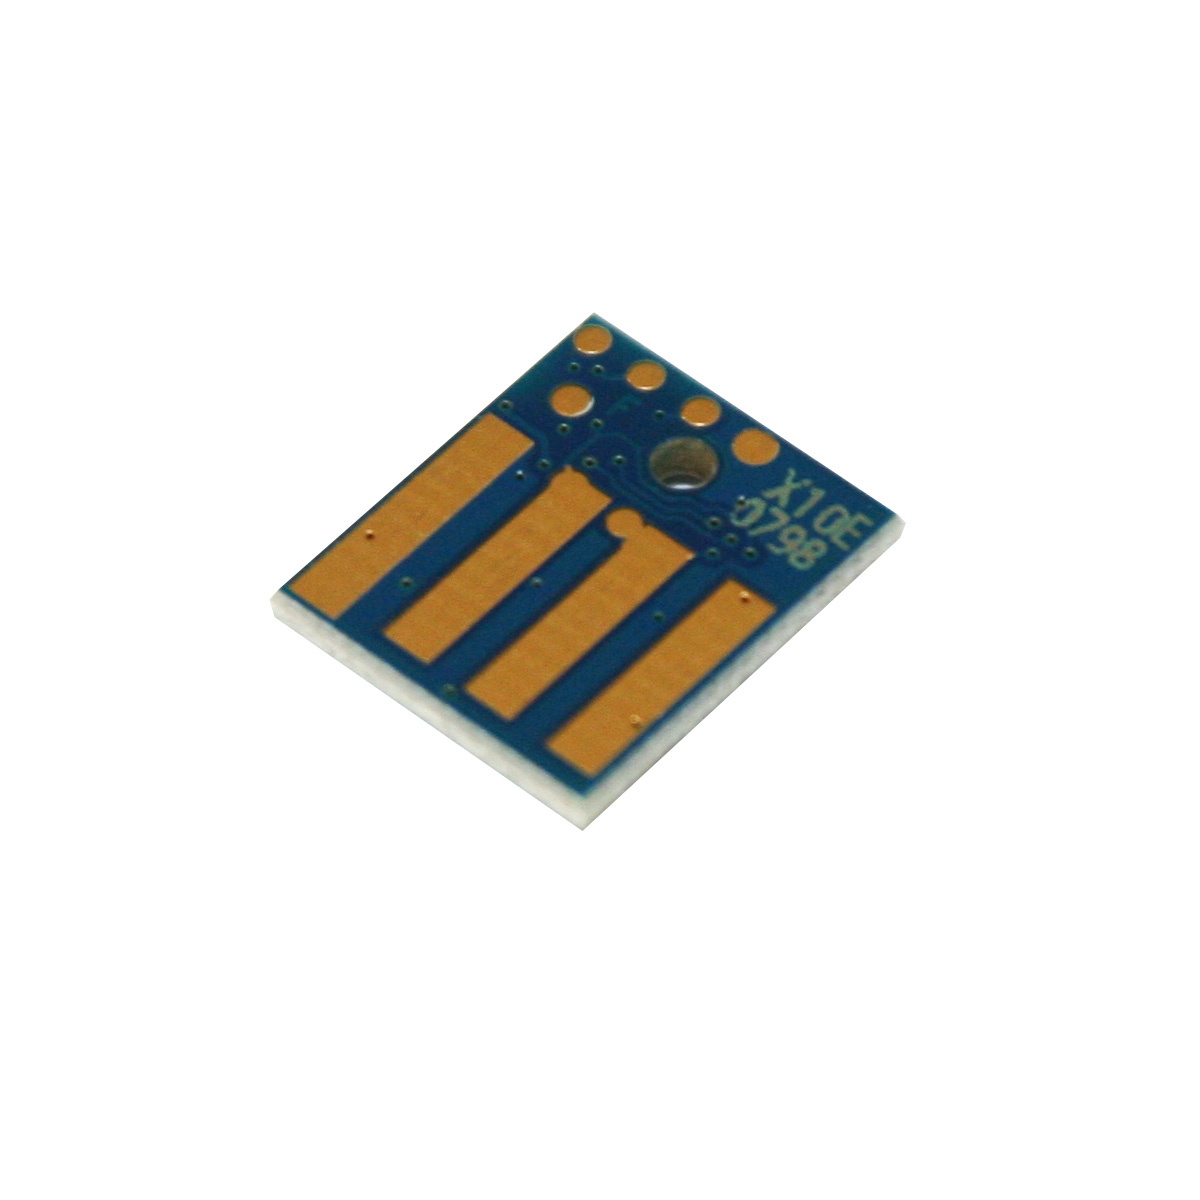 Chip zliczający Lexmark MX 410